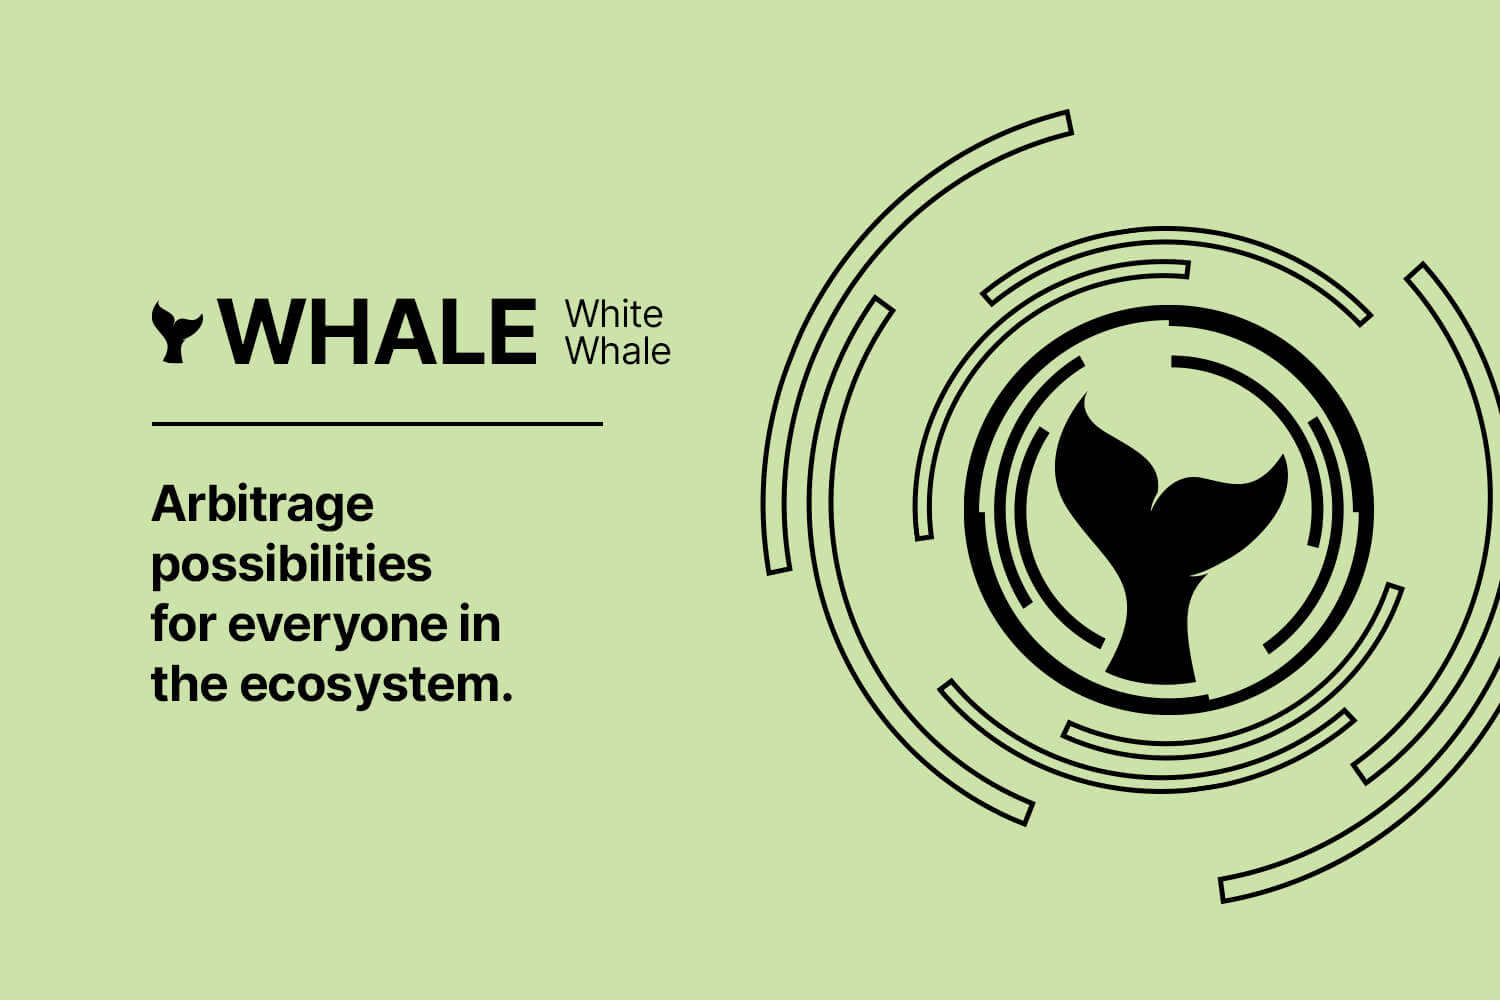 3. White Whale